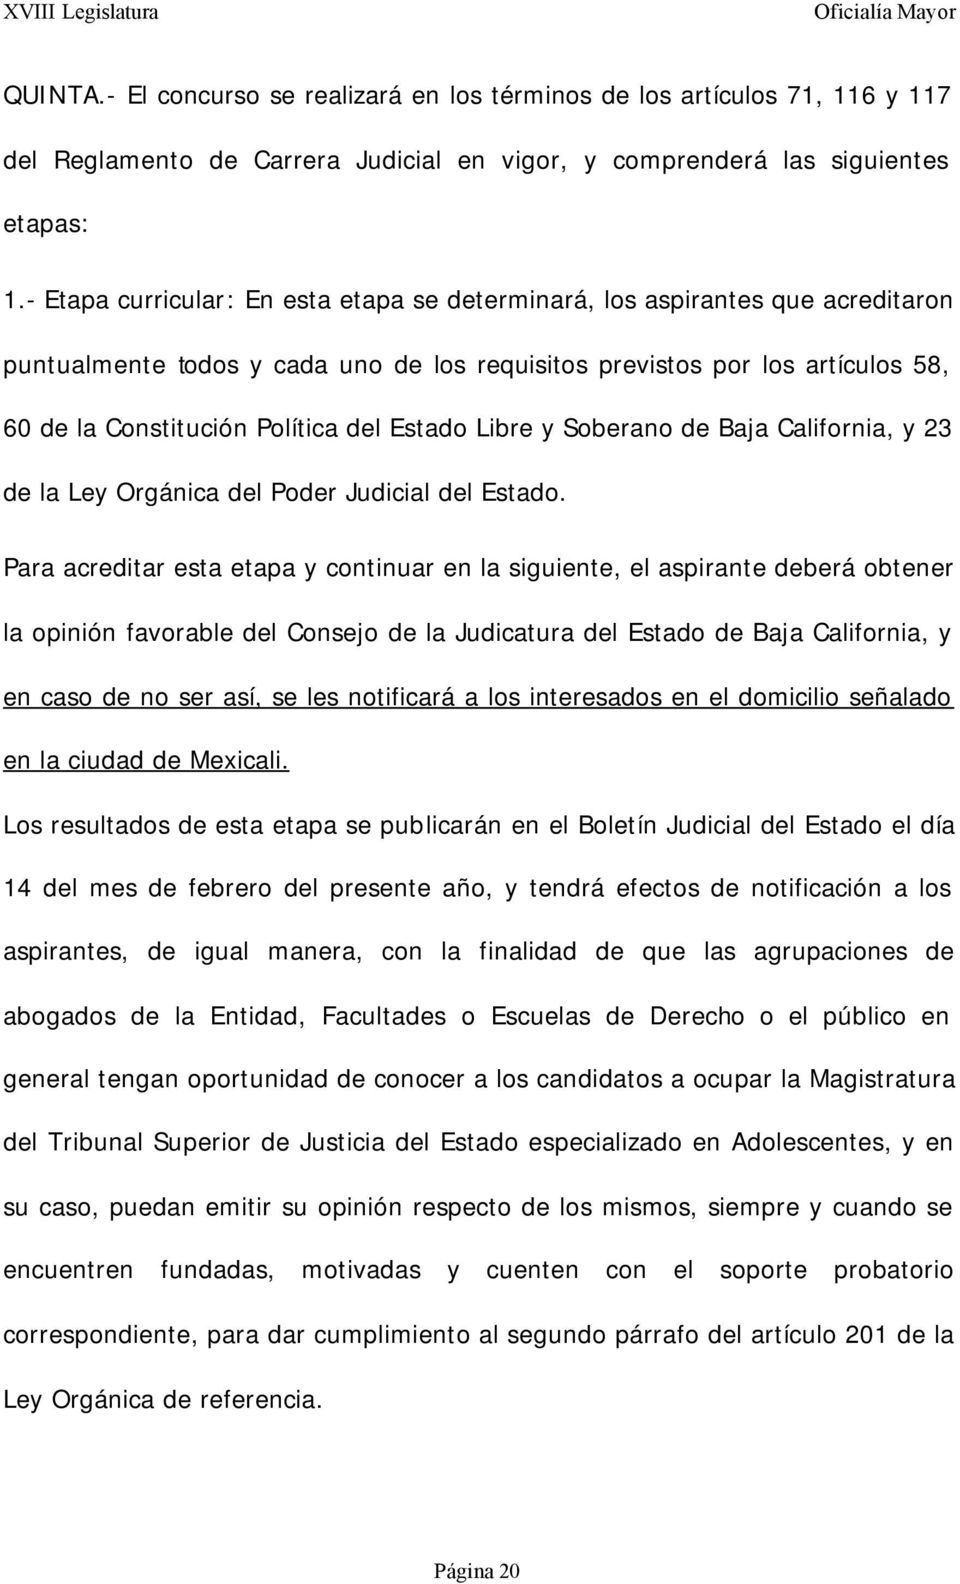 Estado Libre y Soberano de Baja California, y 23 de la Ley Orgánica del Poder Judicial del Estado.